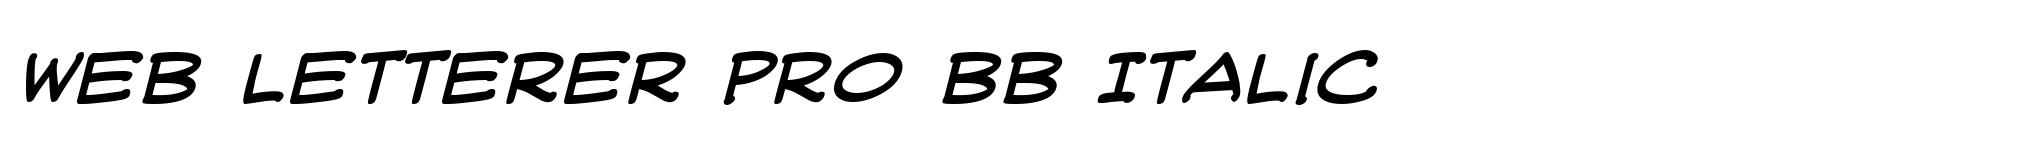 Web Letterer Pro BB Italic image